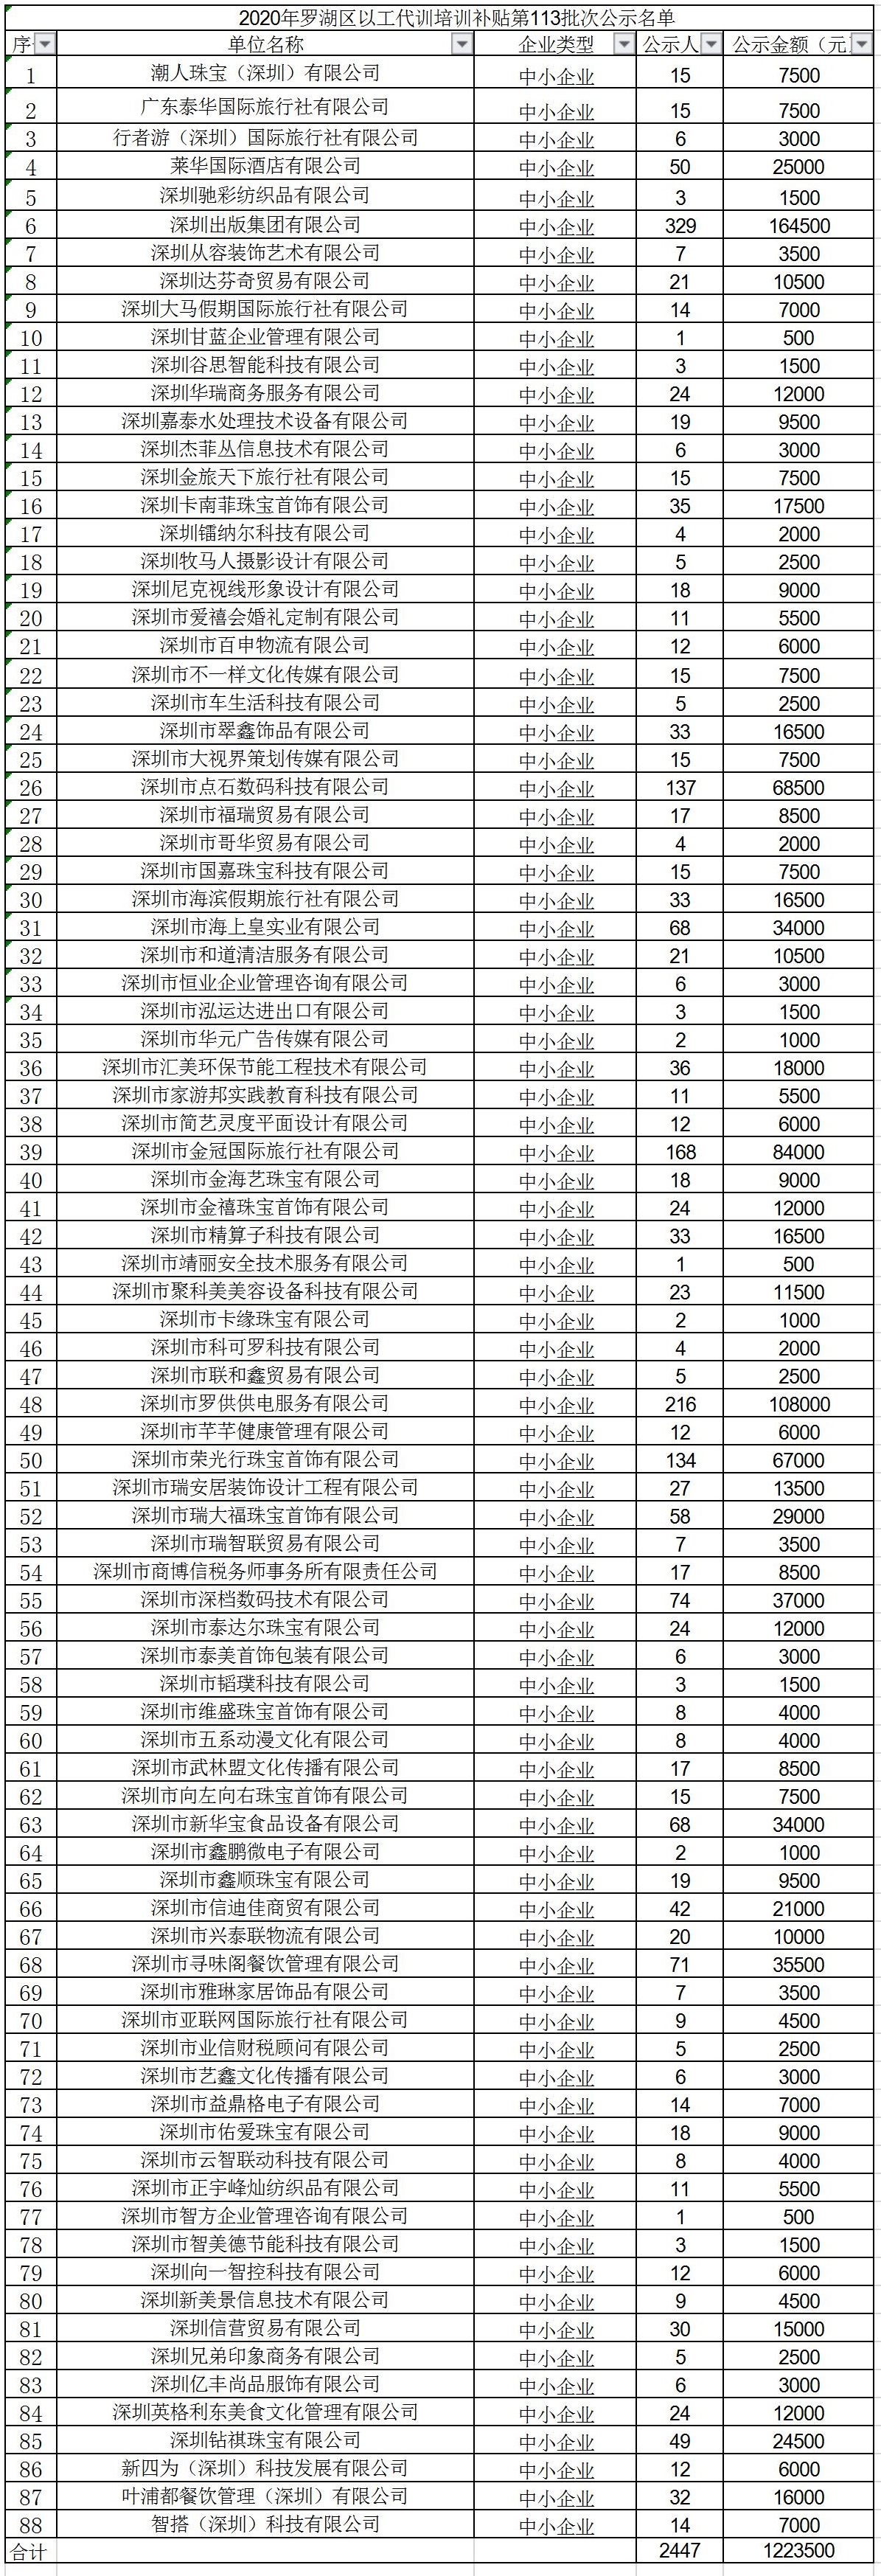 2020年深圳市罗湖区以工代训培训补贴第113批次公示名单.jpg